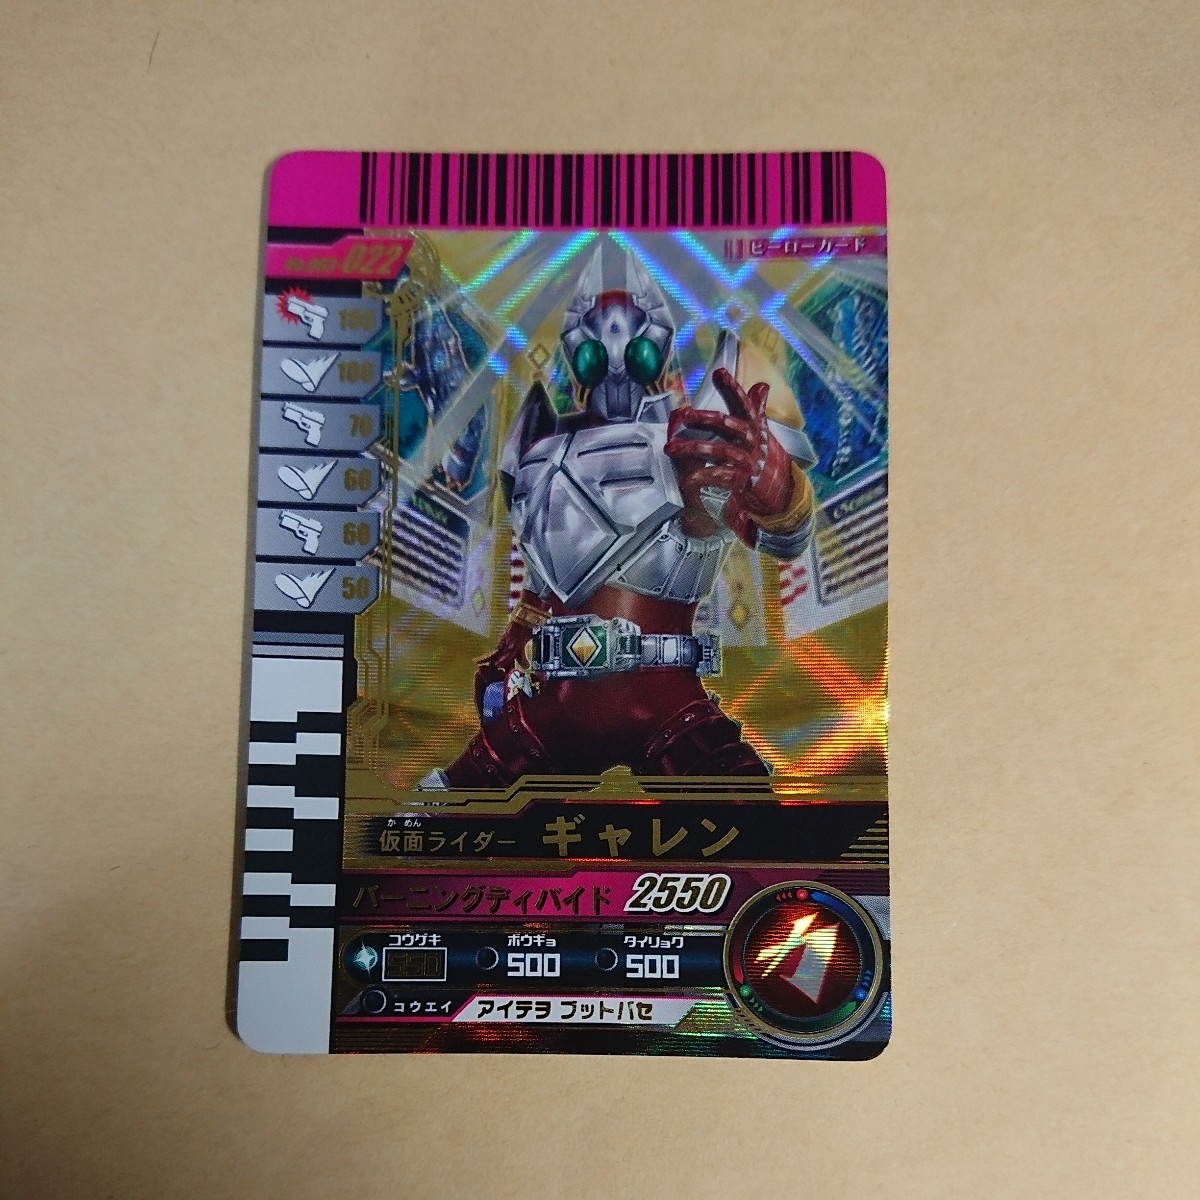  Kamen Rider Battle Ganbaride 003.LR Kamen Rider galley n003-022